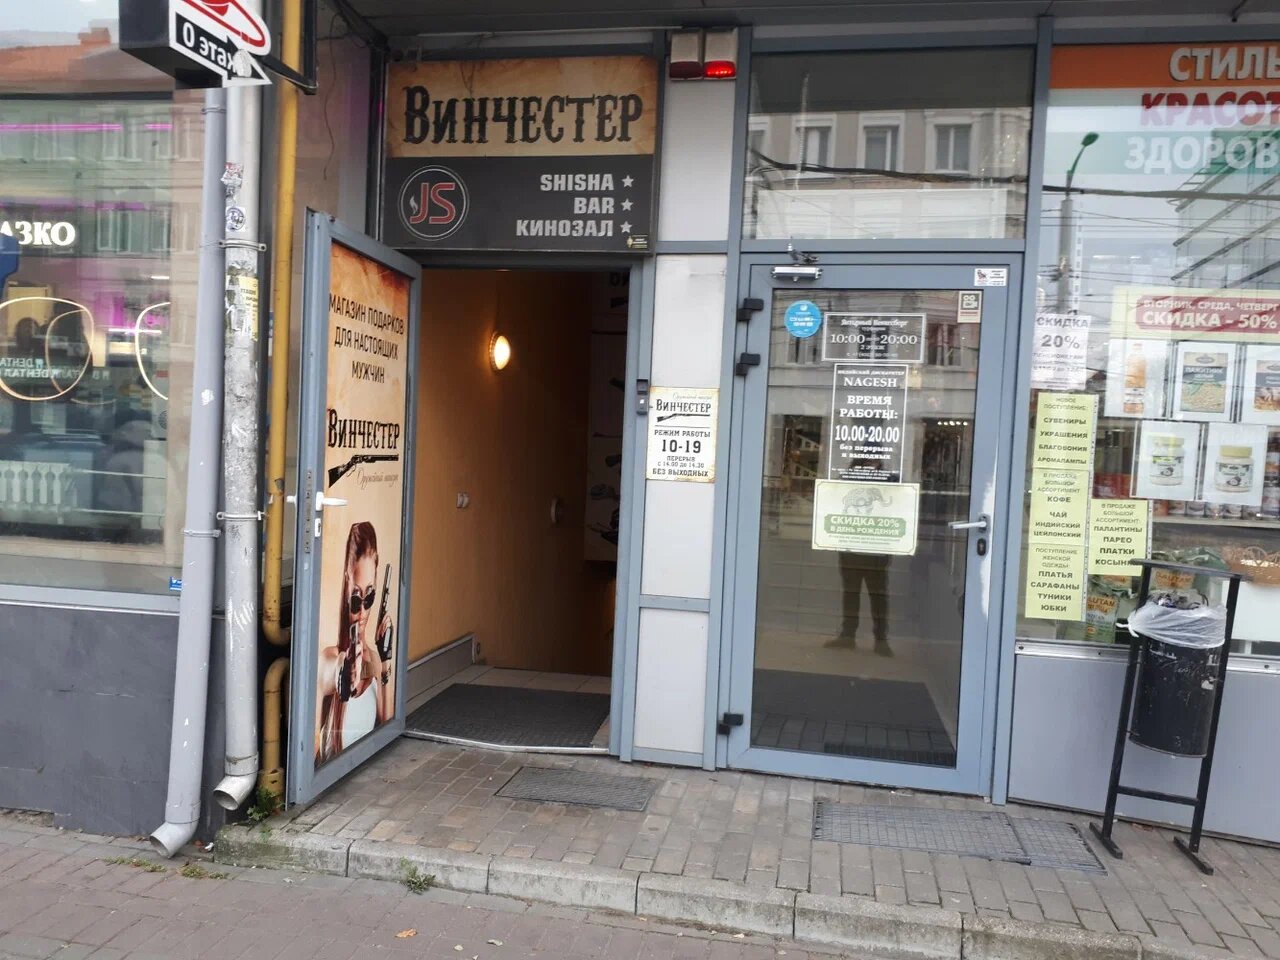 Вход в магазин "Винчестер" на Черняховского в Калининграде